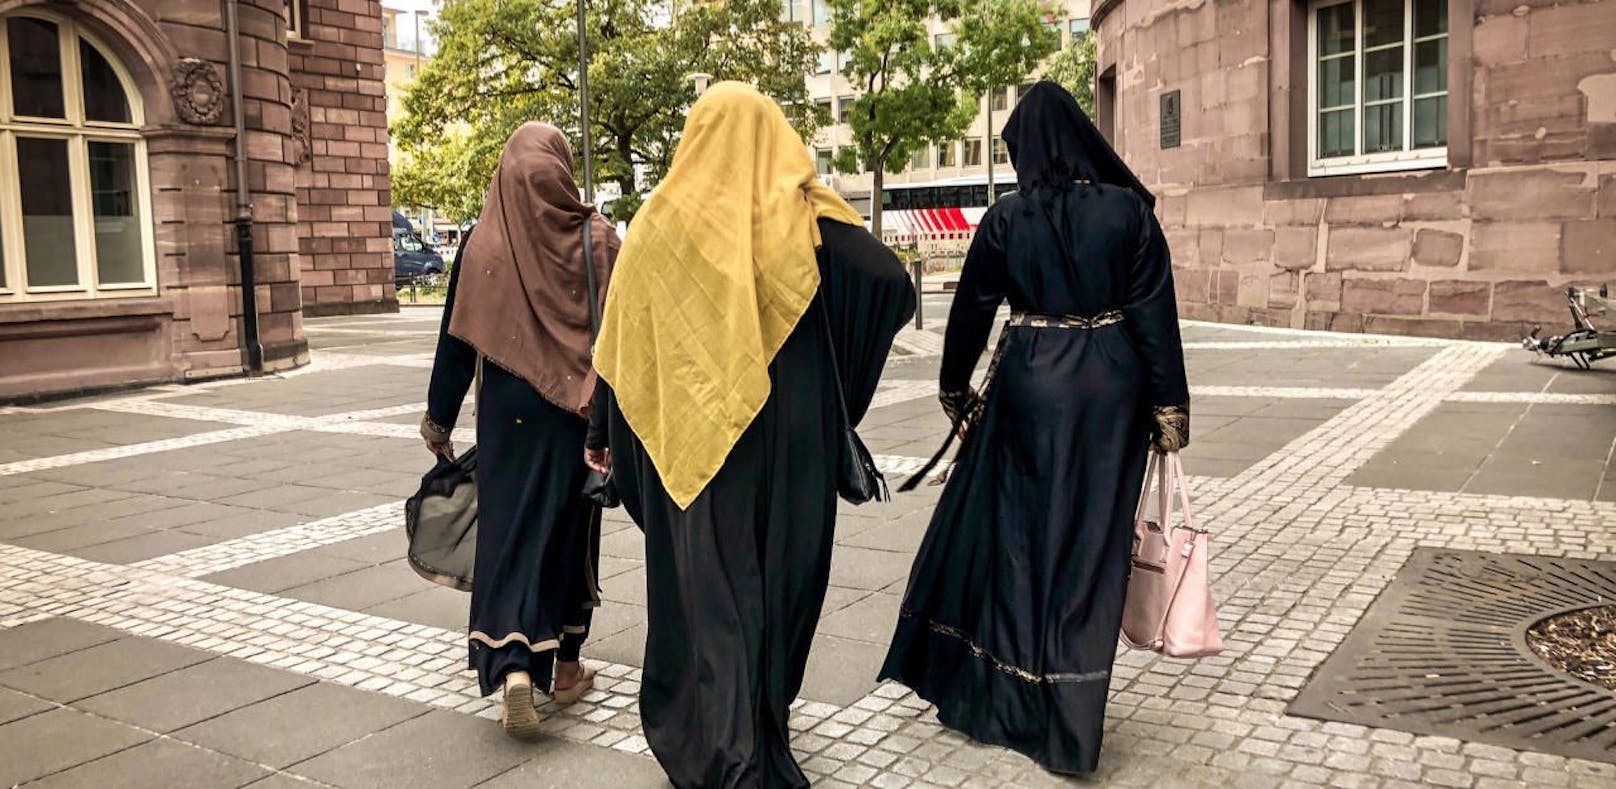 Vor allem muslimische Frauen werden in der Steiermark immer öfter das Ziel von Diskriminierungen. (Symbolbild)